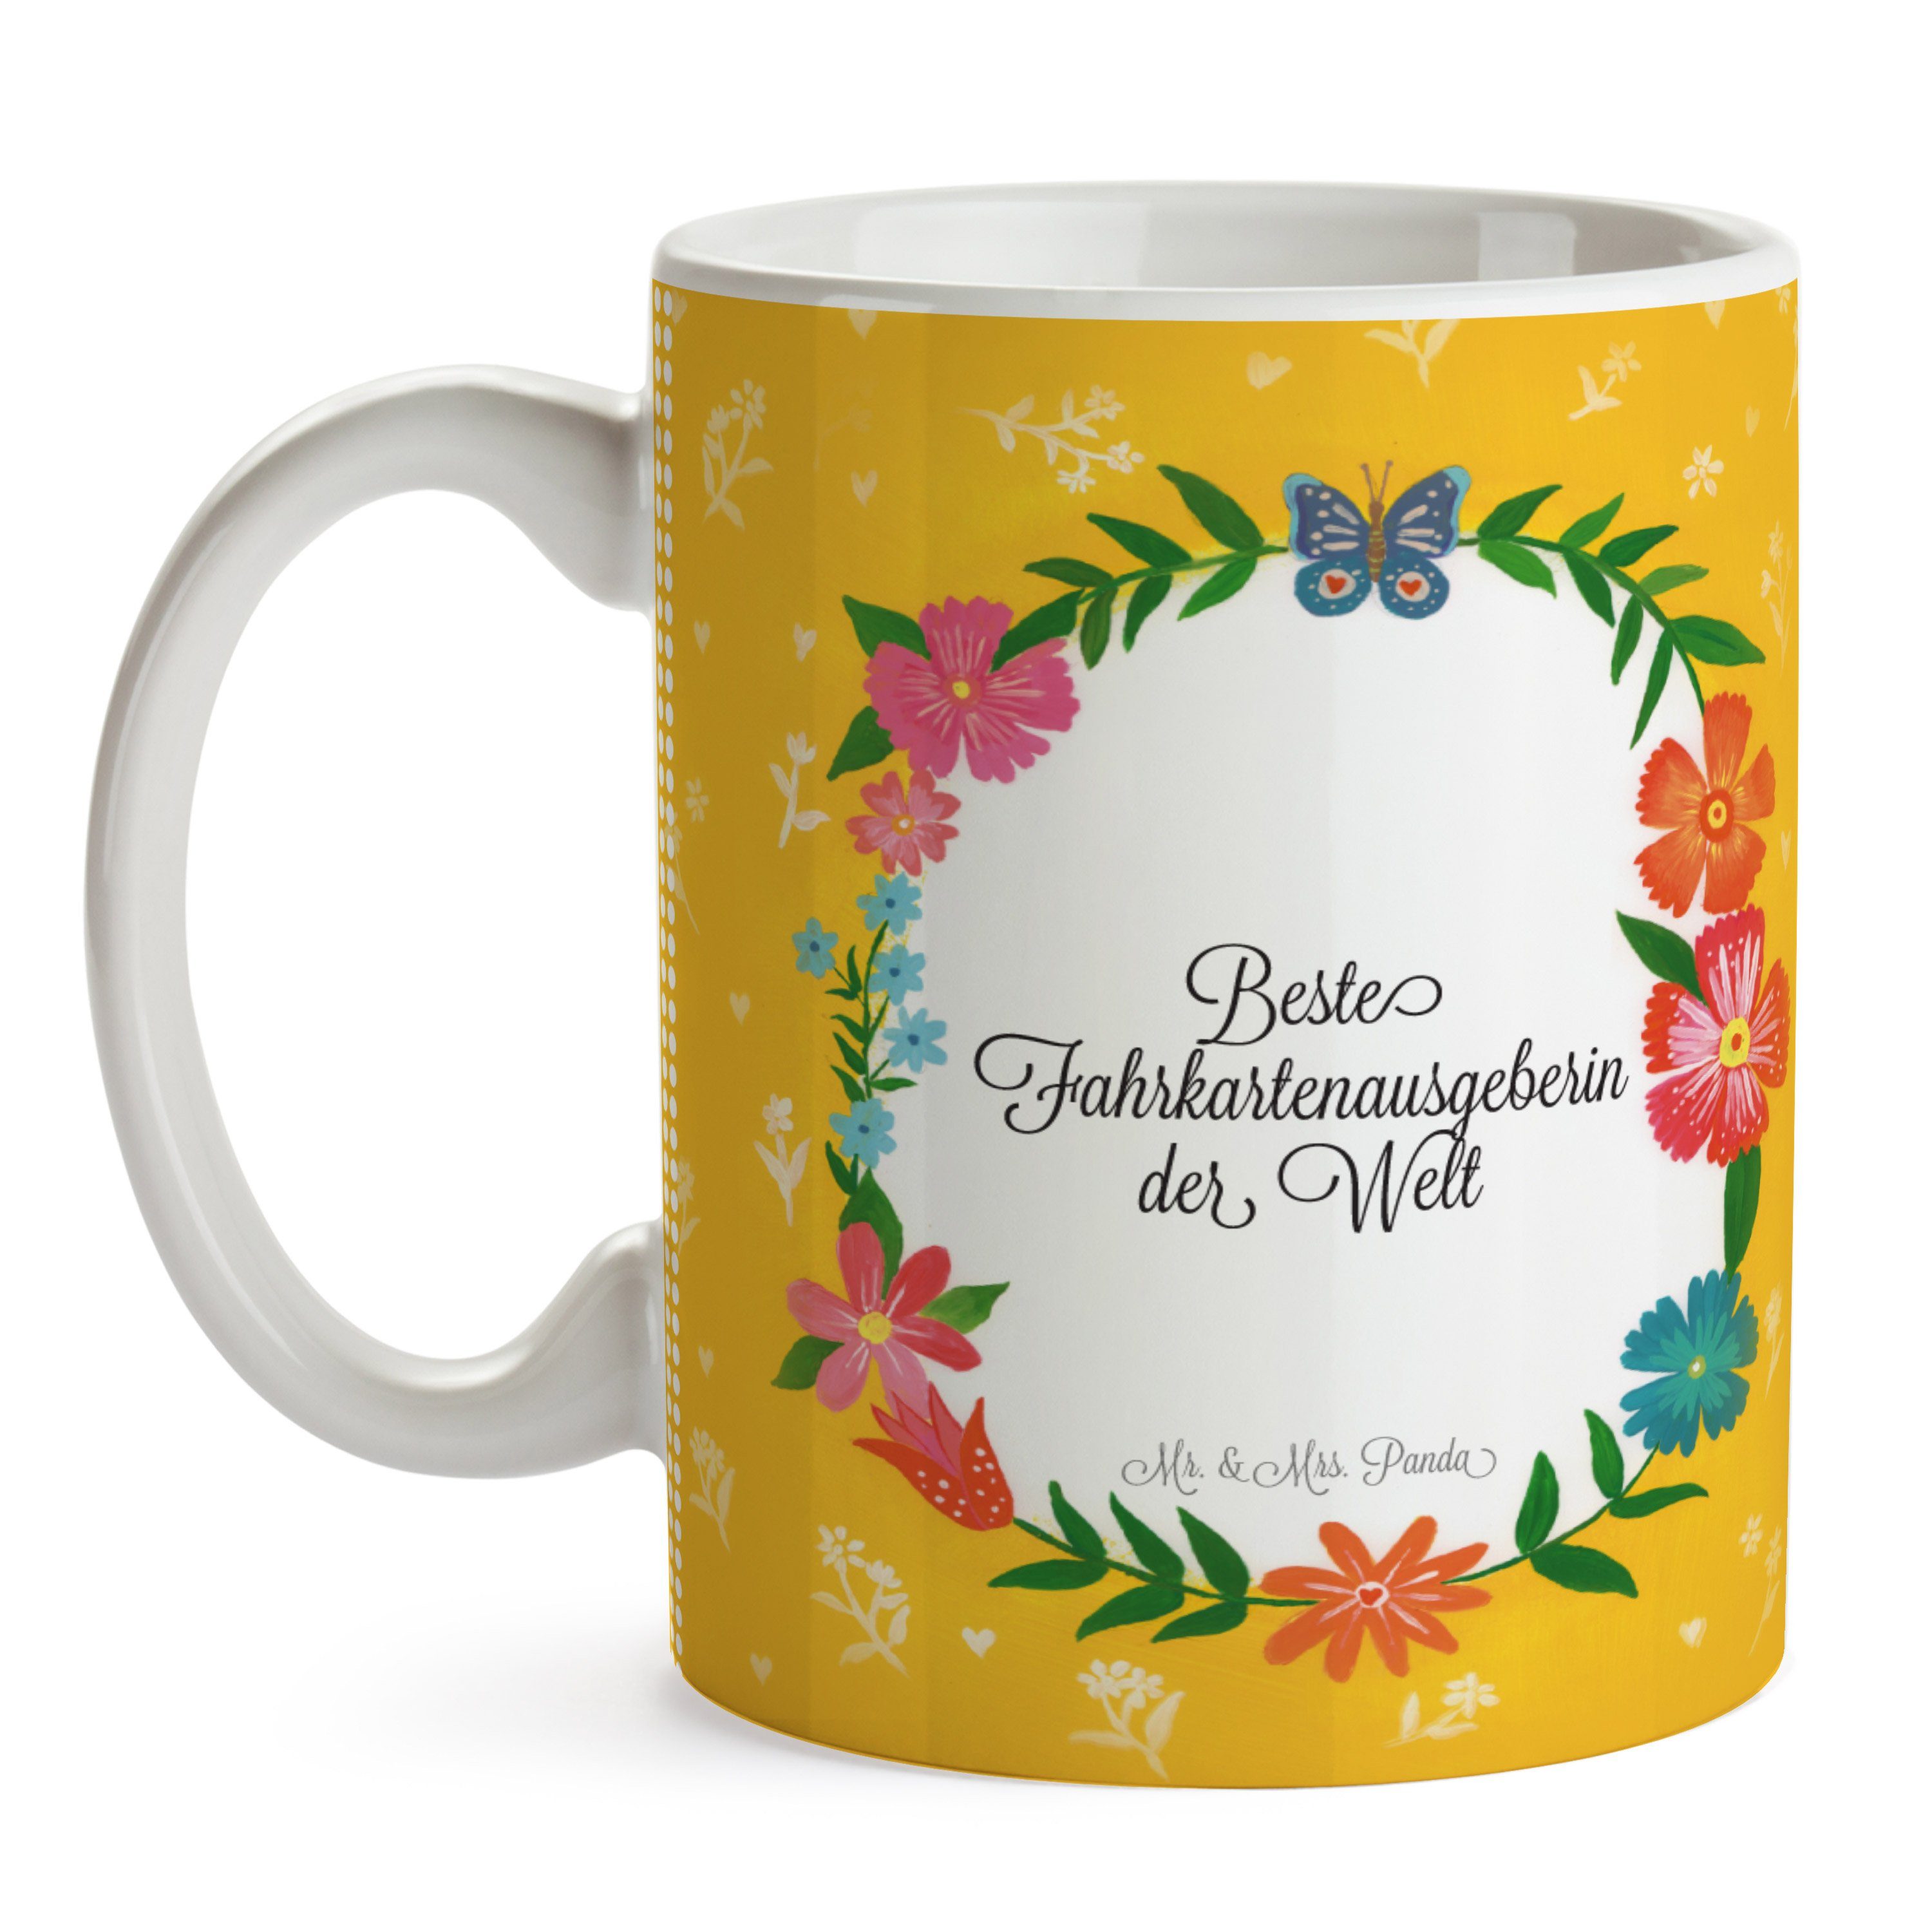 Keramik Tass, Kaffeetasse, Fahrkartenausgeberin Mrs. & Panda Abschied, - Geschenk, Mr. Geschenk Tasse